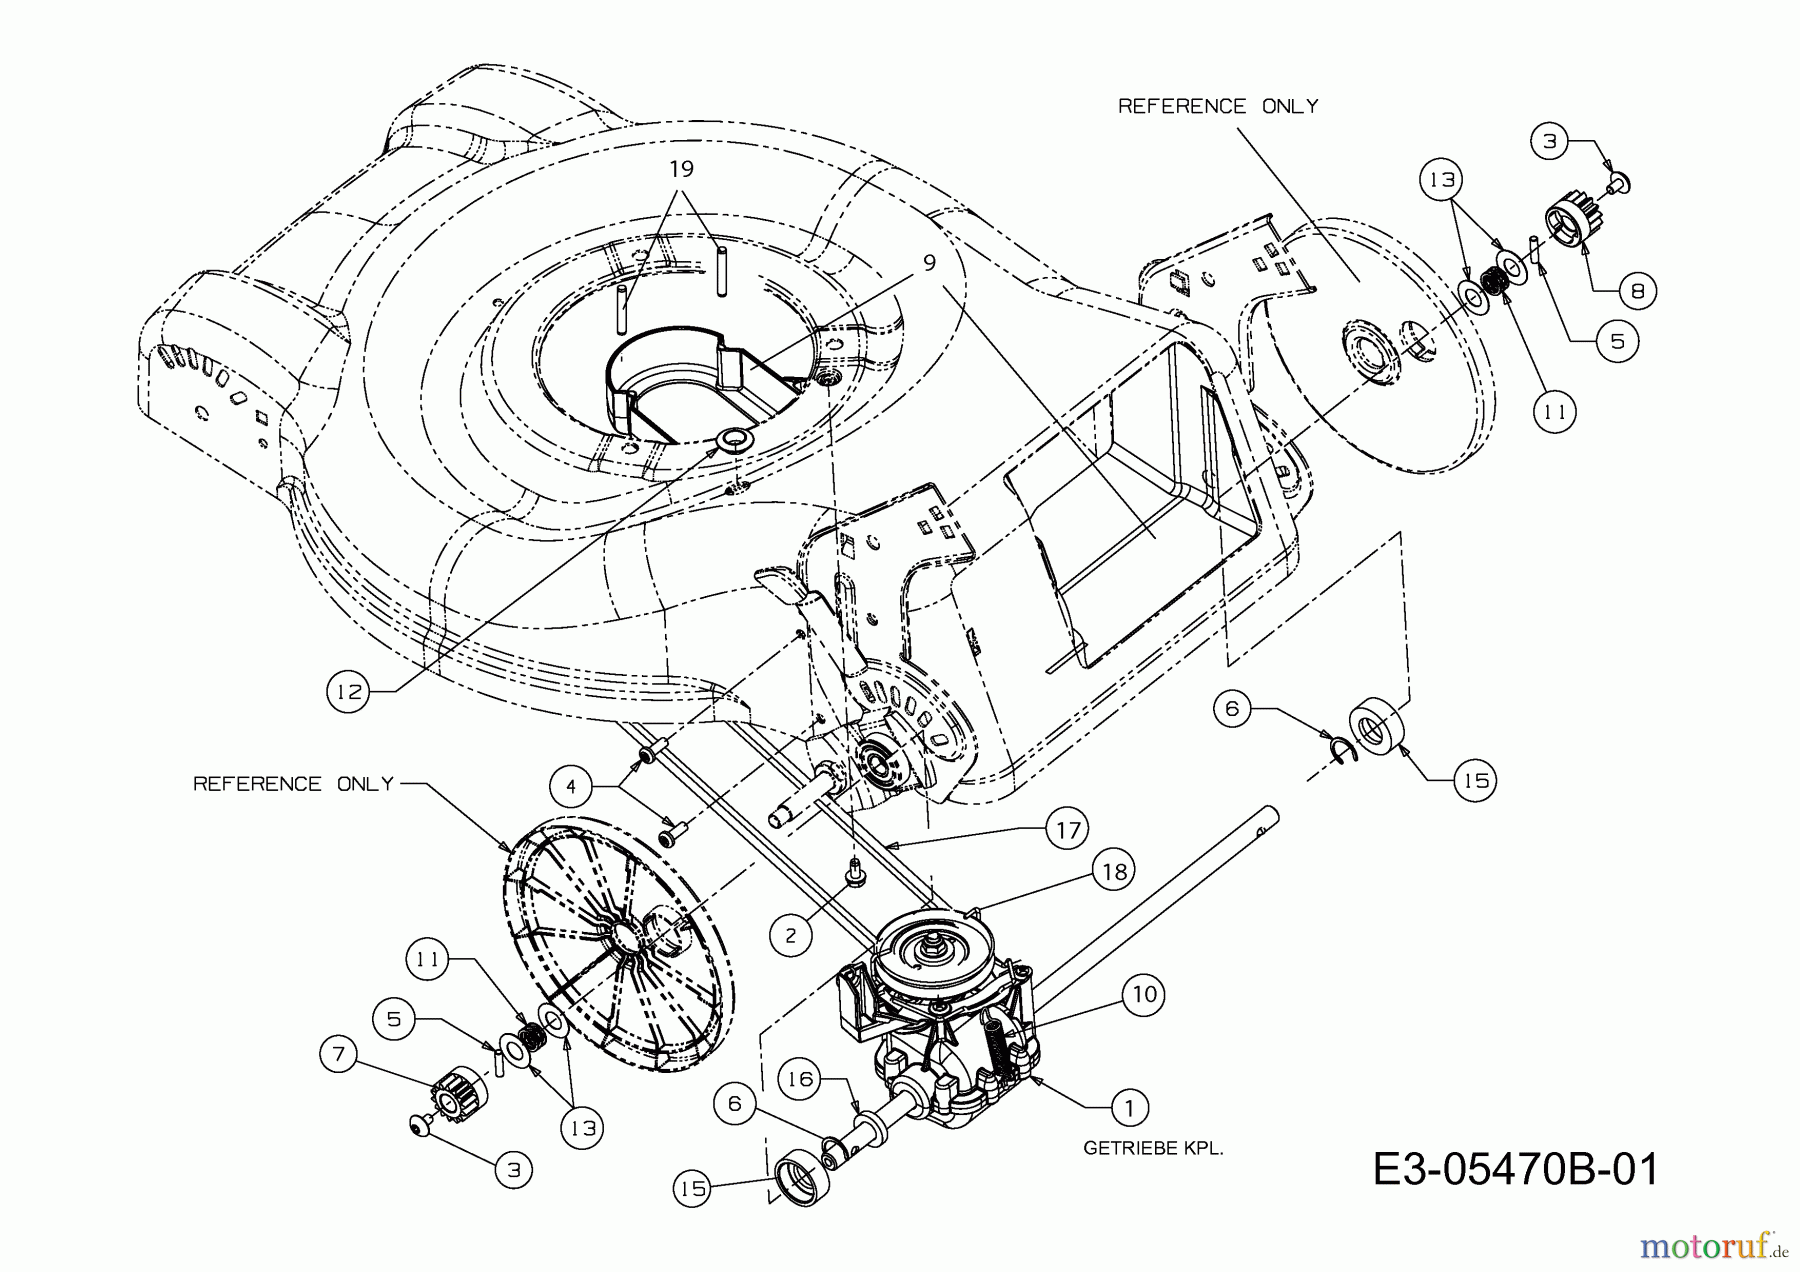  MTD Motormäher mit Antrieb 46 SPHM 12D-J2AQ676  (2011) Getriebe